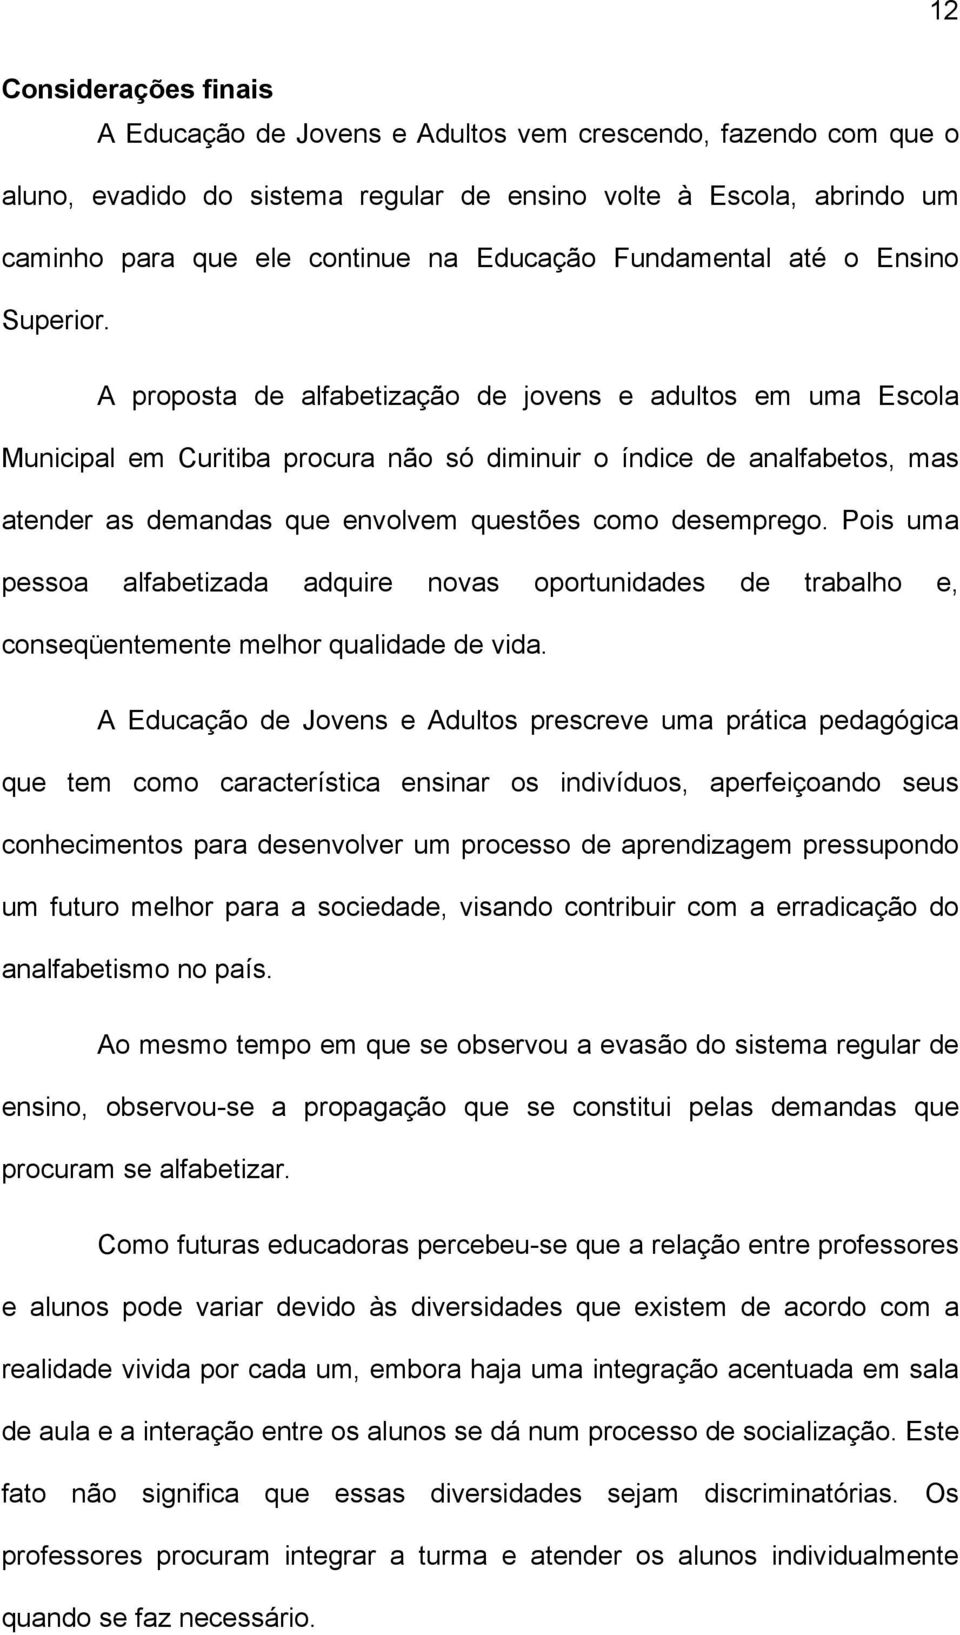 A proposta de alfabetização de jovens e adultos em uma Escola Municipal em Curitiba procura não só diminuir o índice de analfabetos, mas atender as demandas que envolvem questões como desemprego.